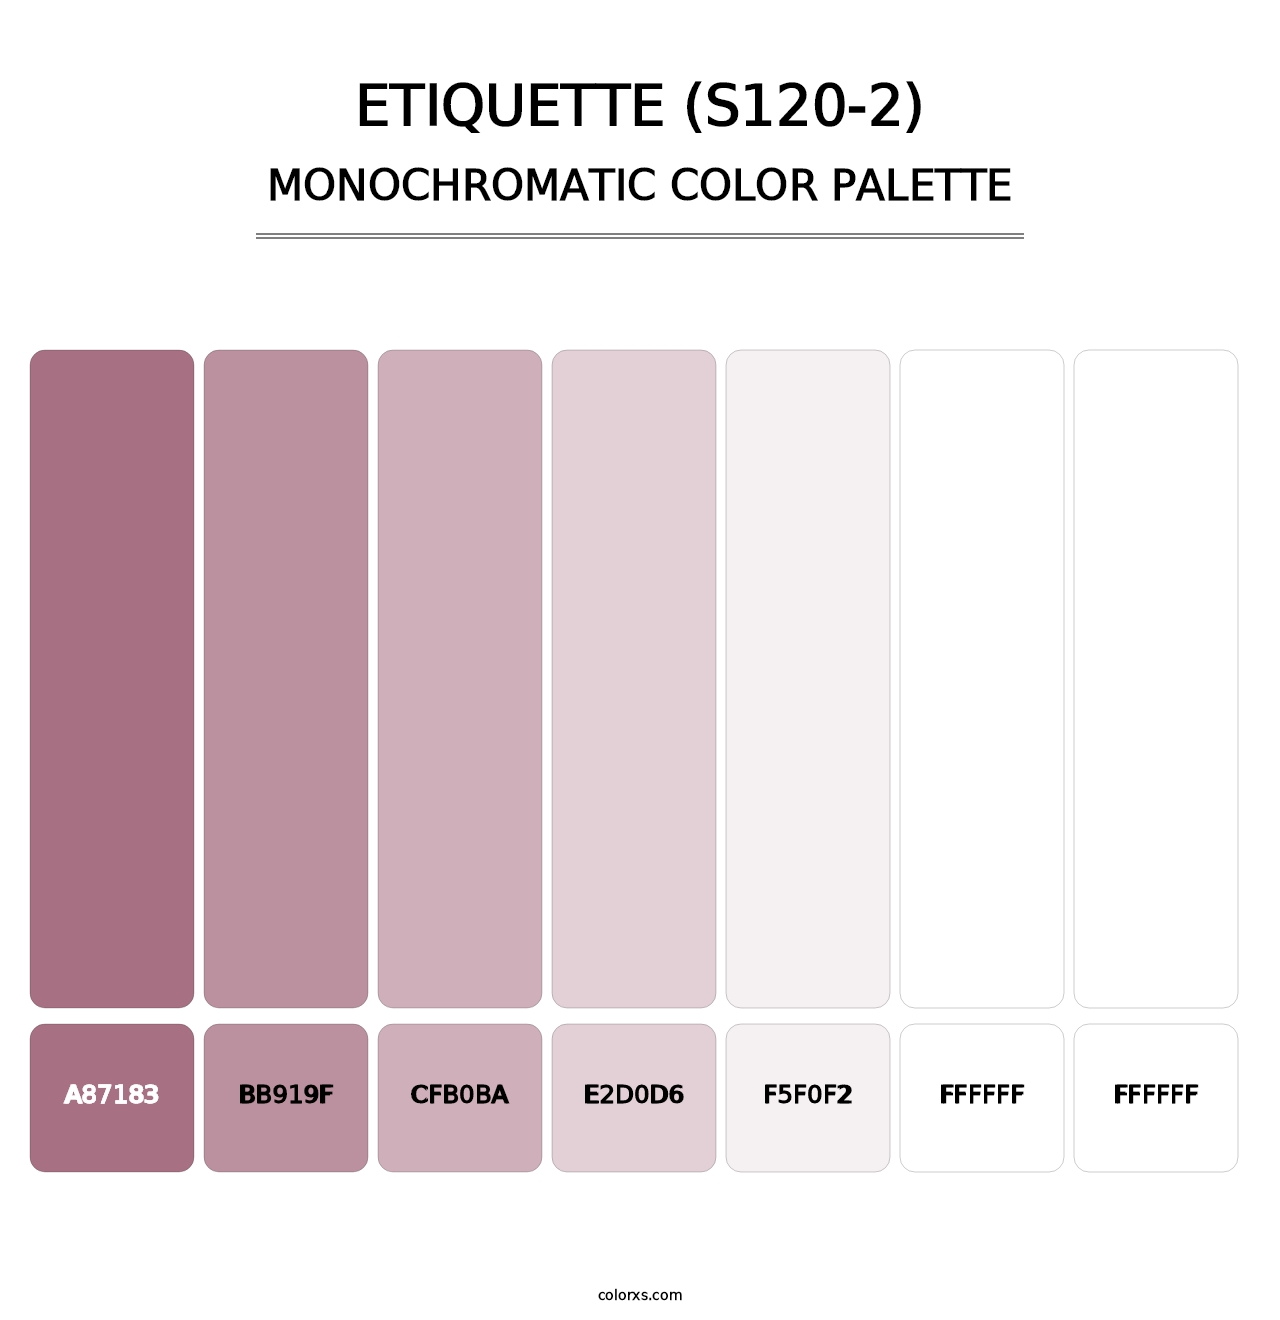 Etiquette (S120-2) - Monochromatic Color Palette